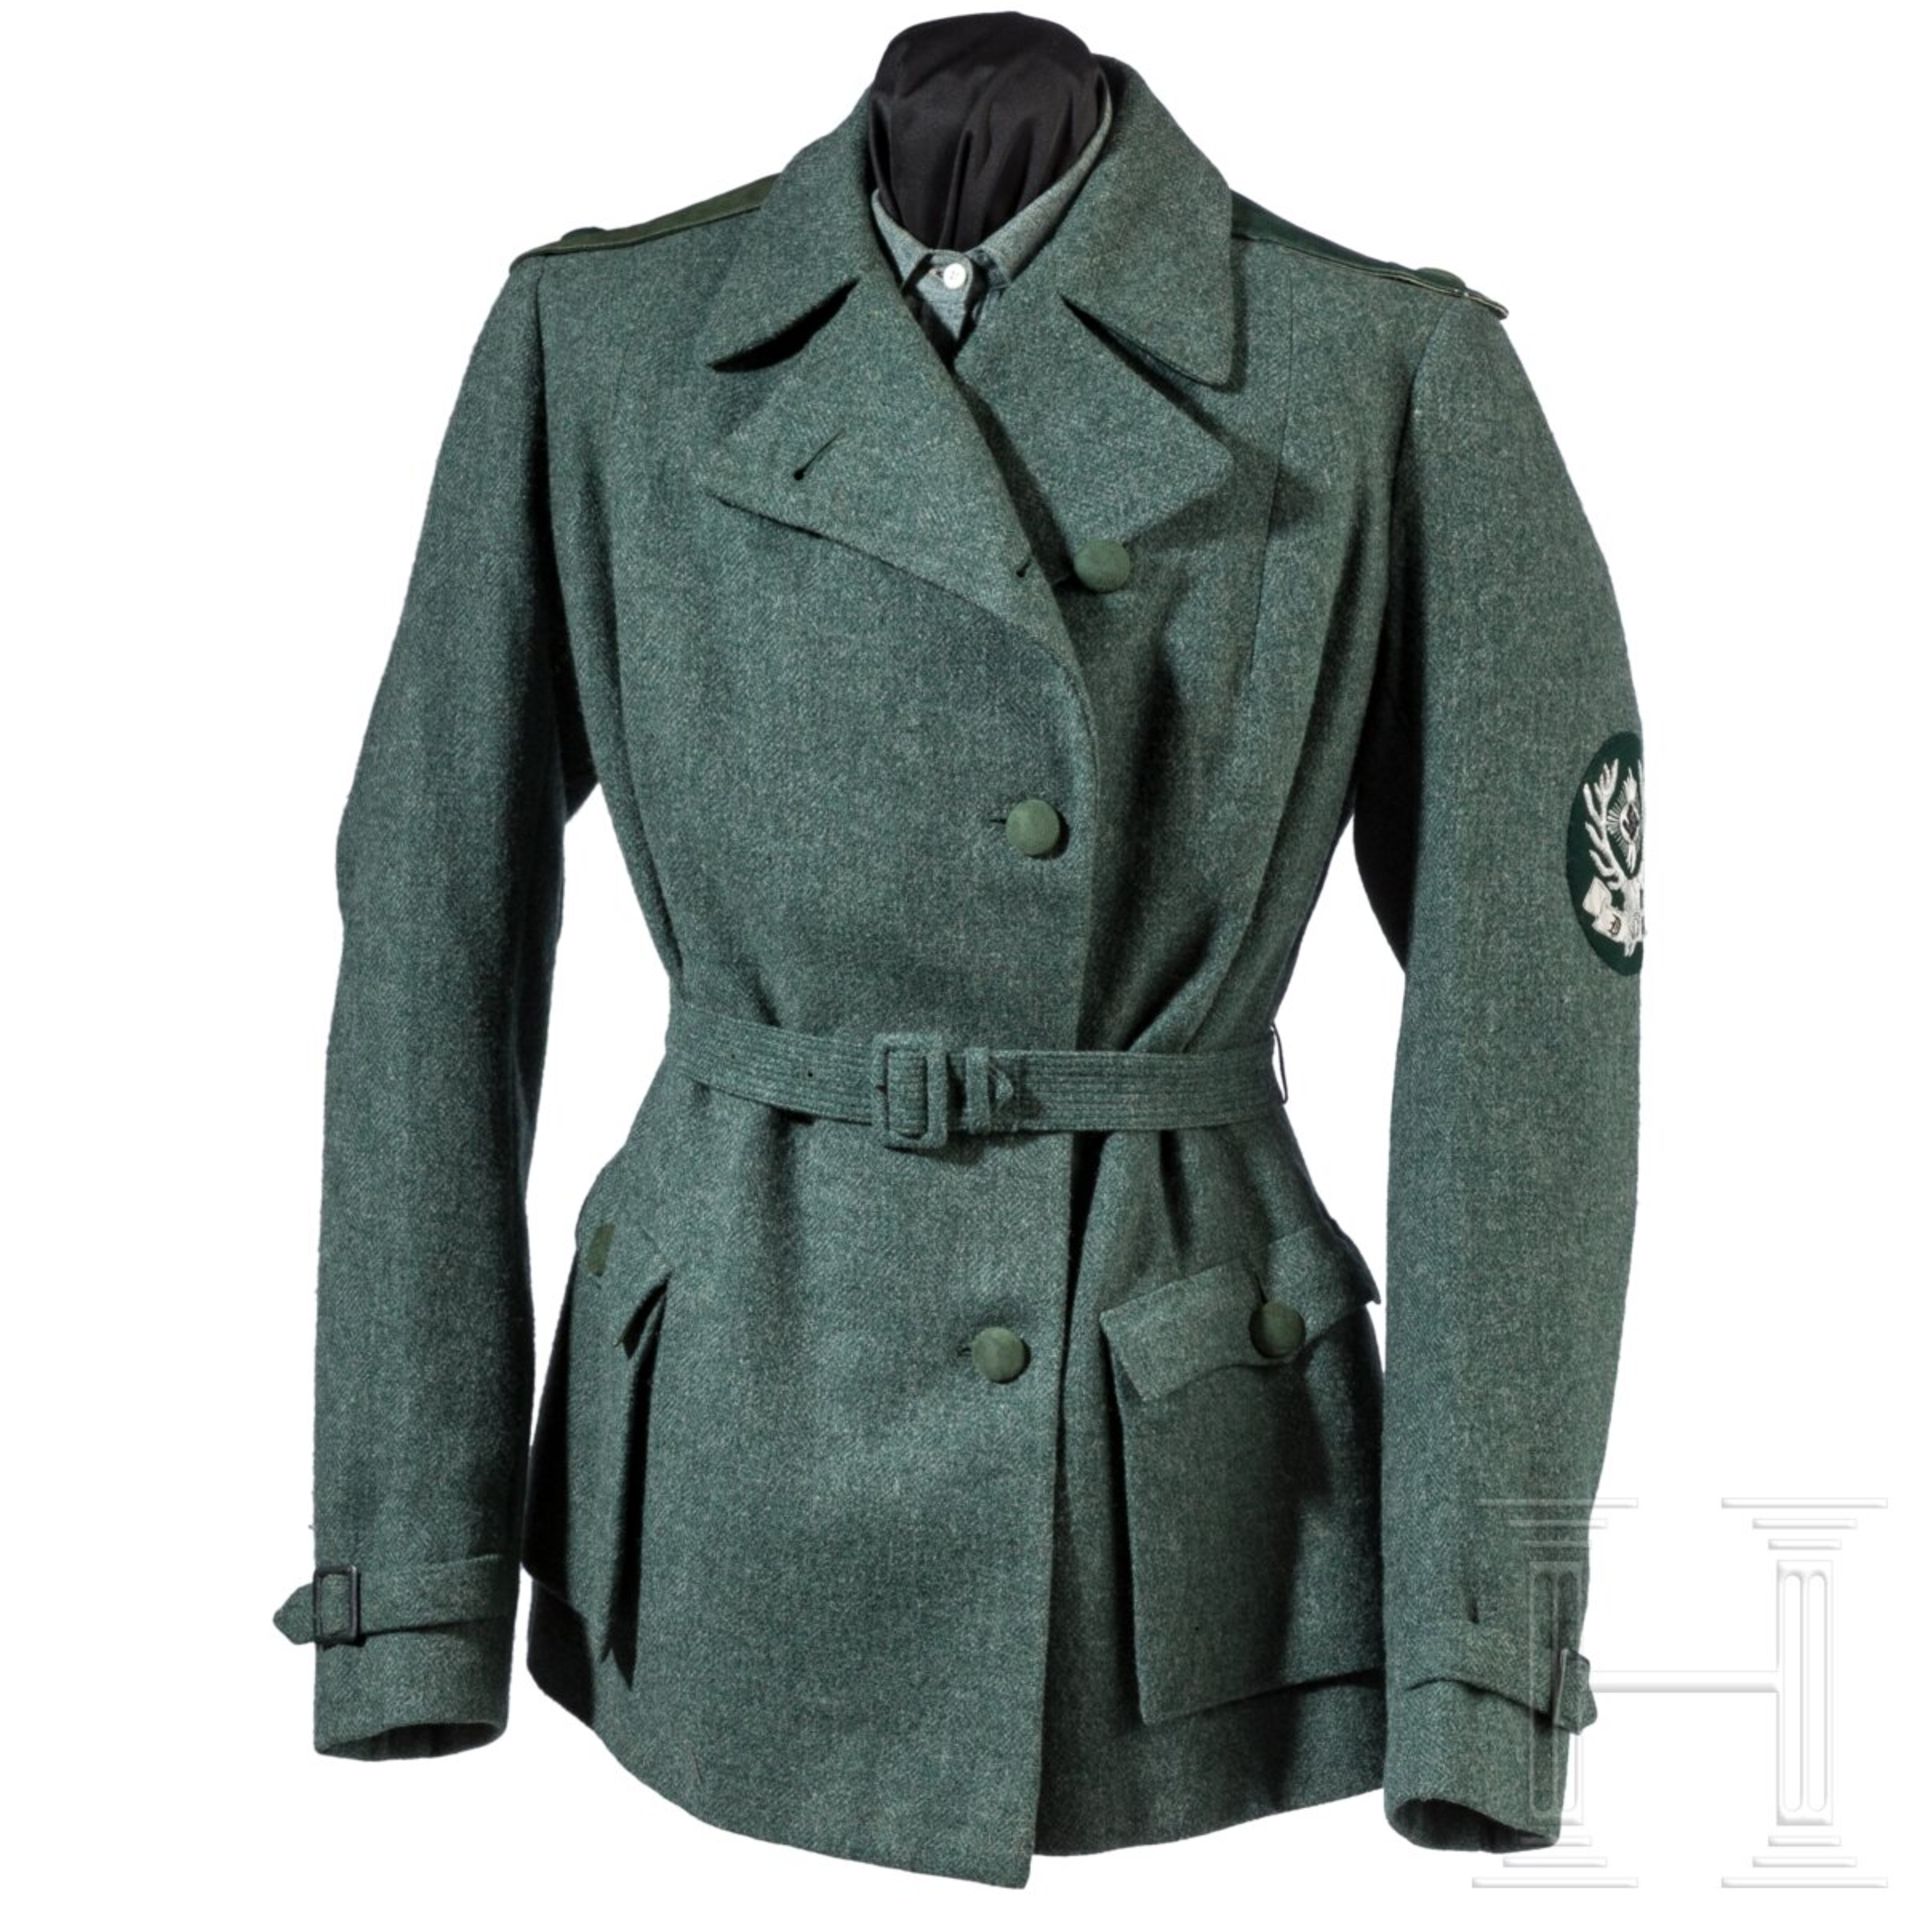 Uniformensemble einer weiblichen Angestellten beim Gau- oder Reichsjägermeister - Image 2 of 11